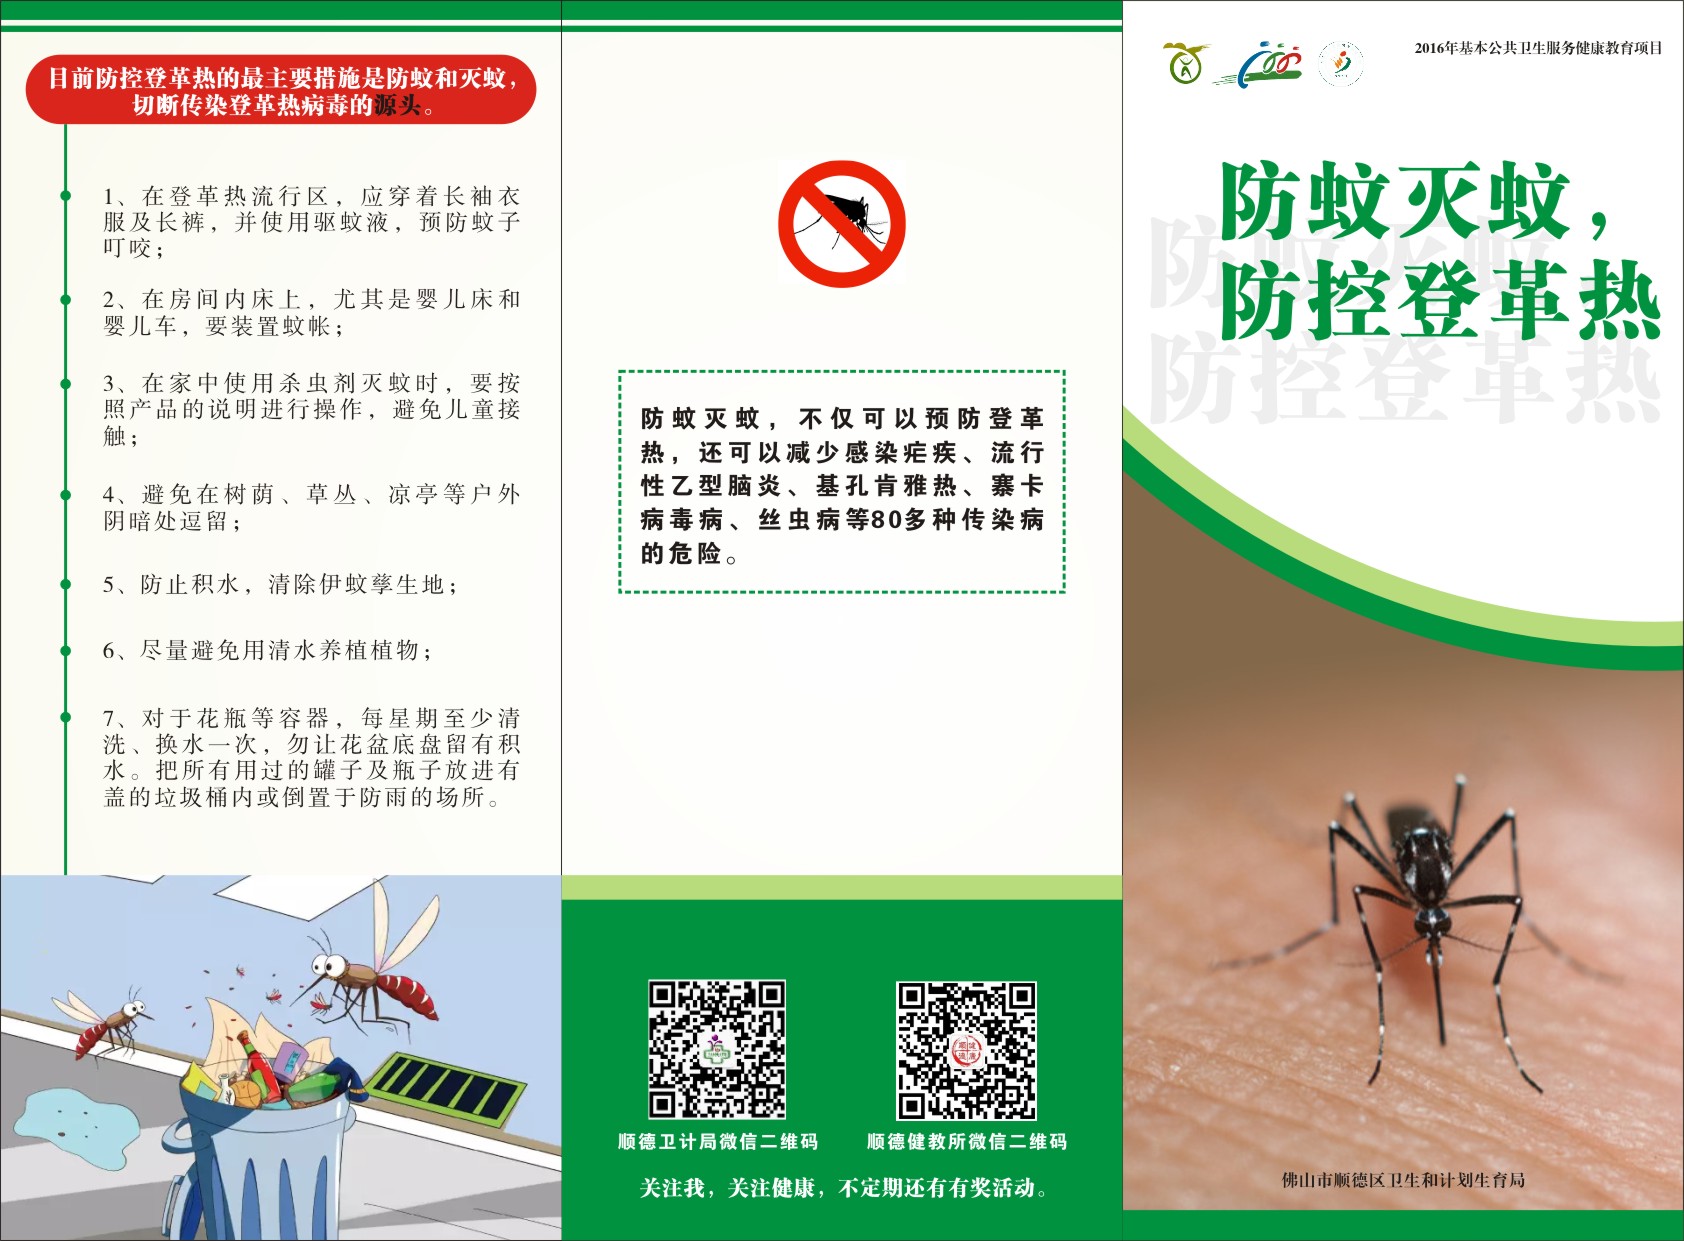 消灭蚊子 预防登革热